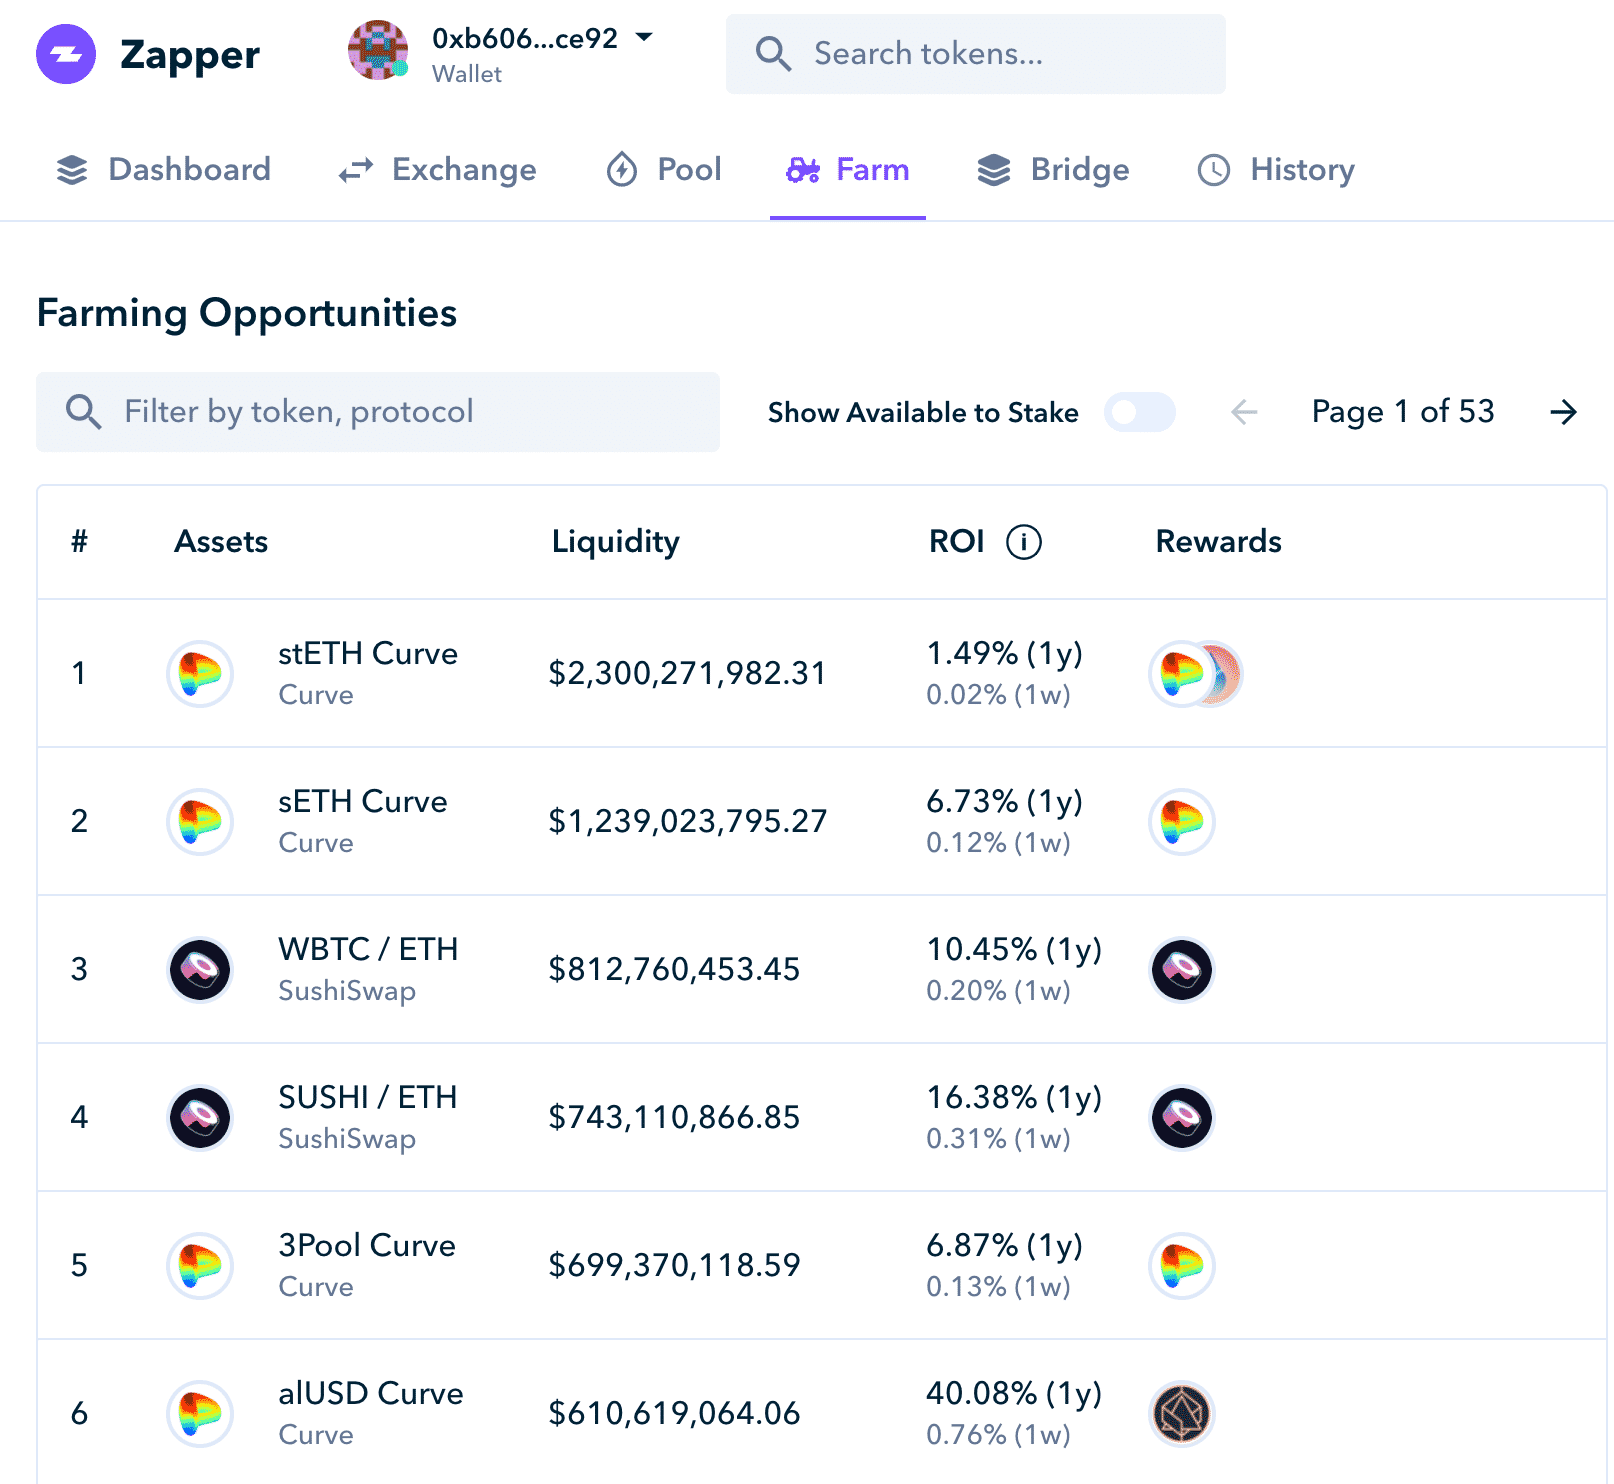 Giao diện người dùng của Zapper